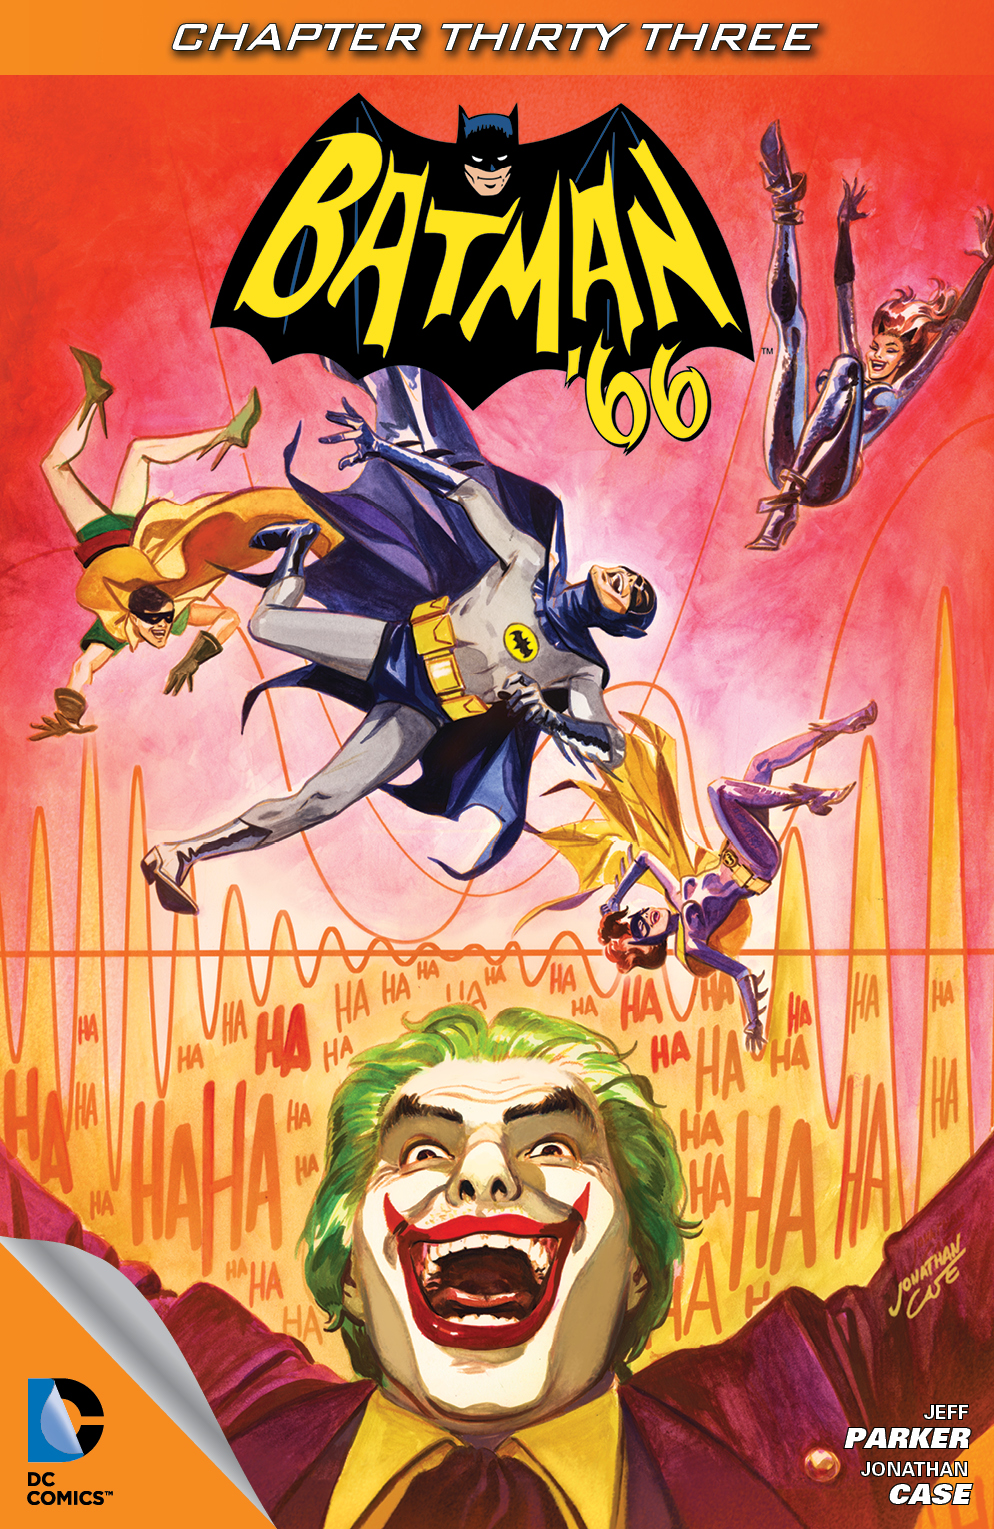 Batman '66 #33 preview images